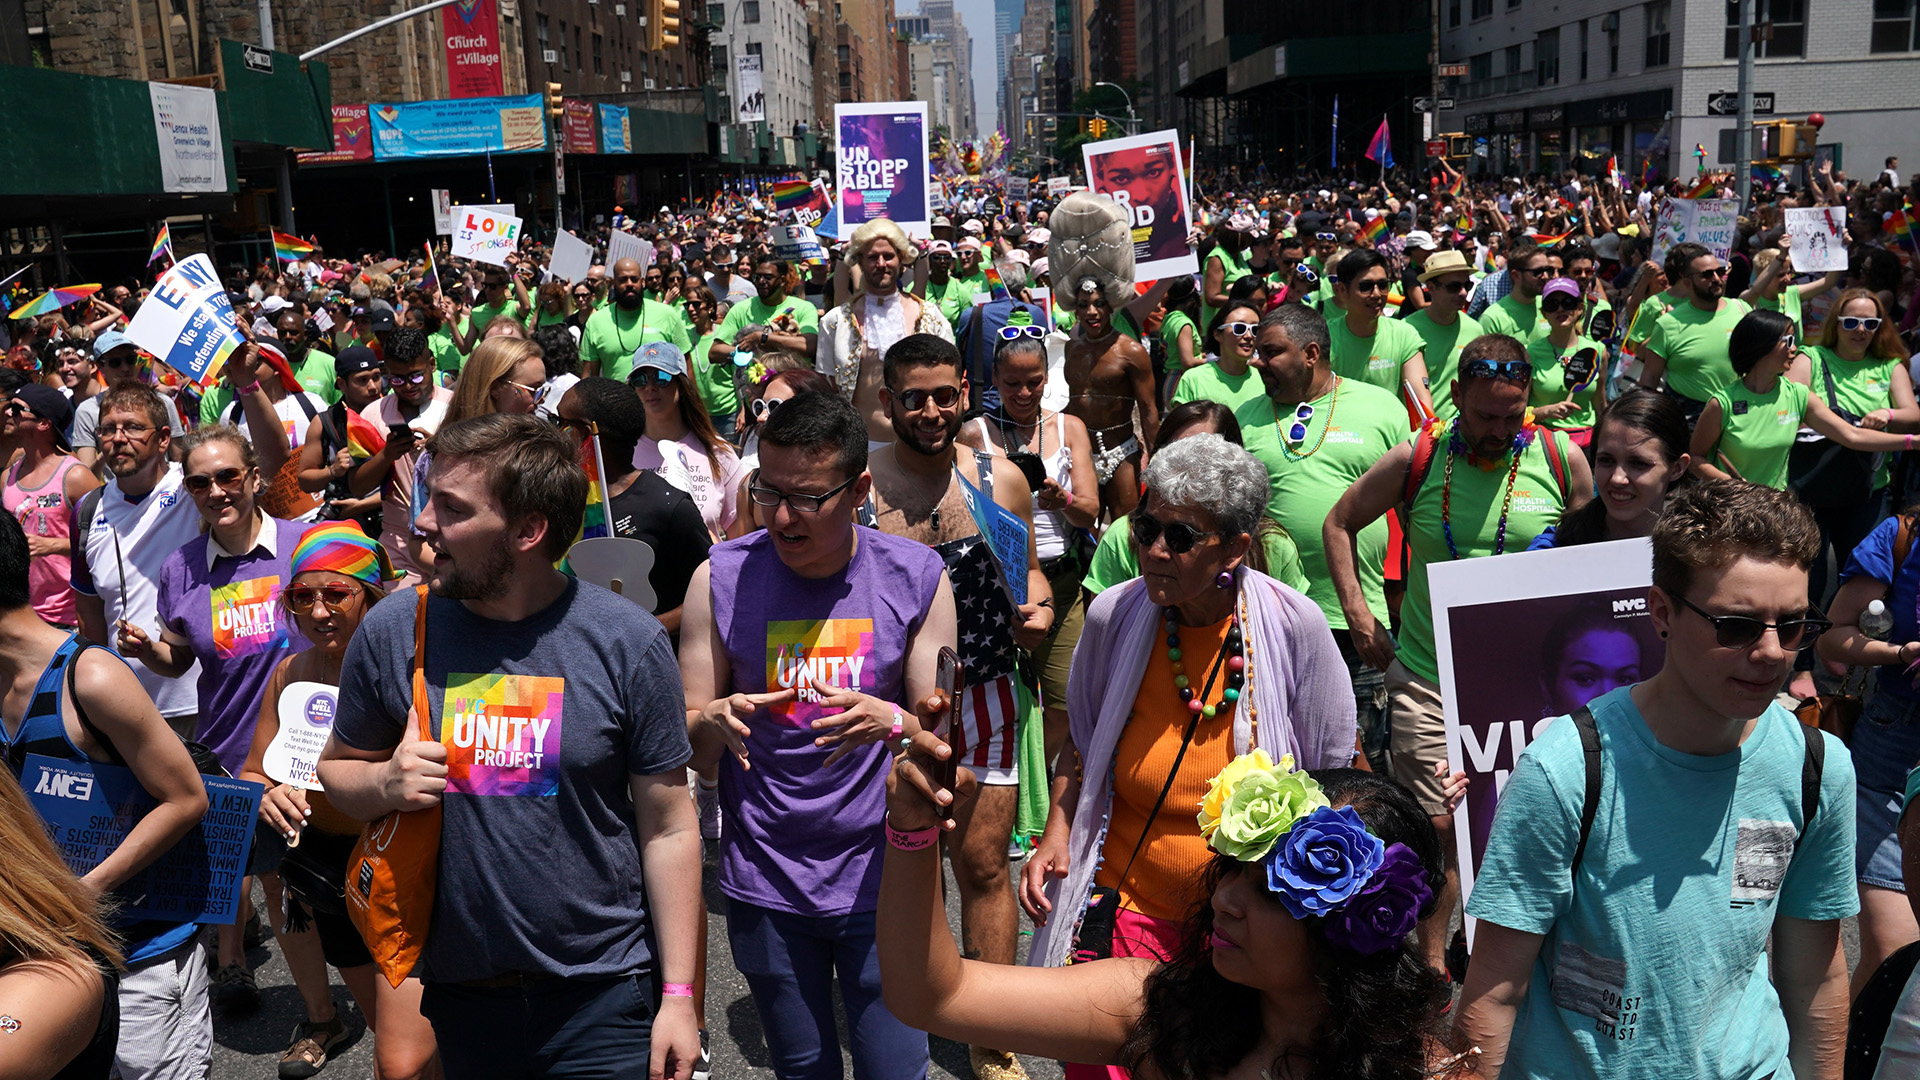 Los neoyorquino portaron los colores de arcoiris en remeras, banderas y máscaras (AFP)